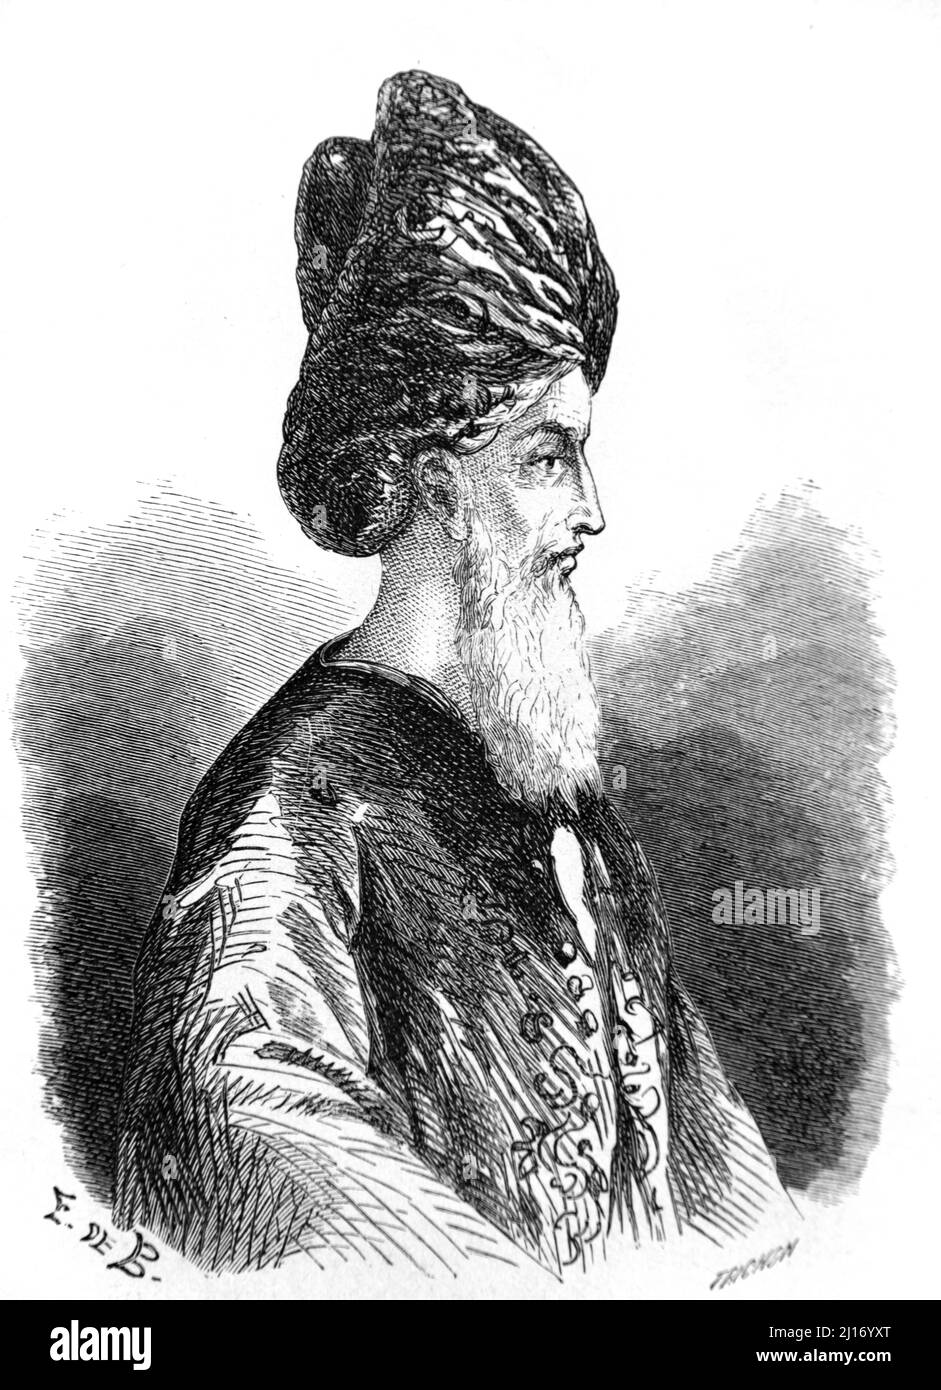 Porträt eines muslimischen Führers oder Imam von Sansibar Tansania. Vintage Illustration oder Gravur 1860. Stockfoto